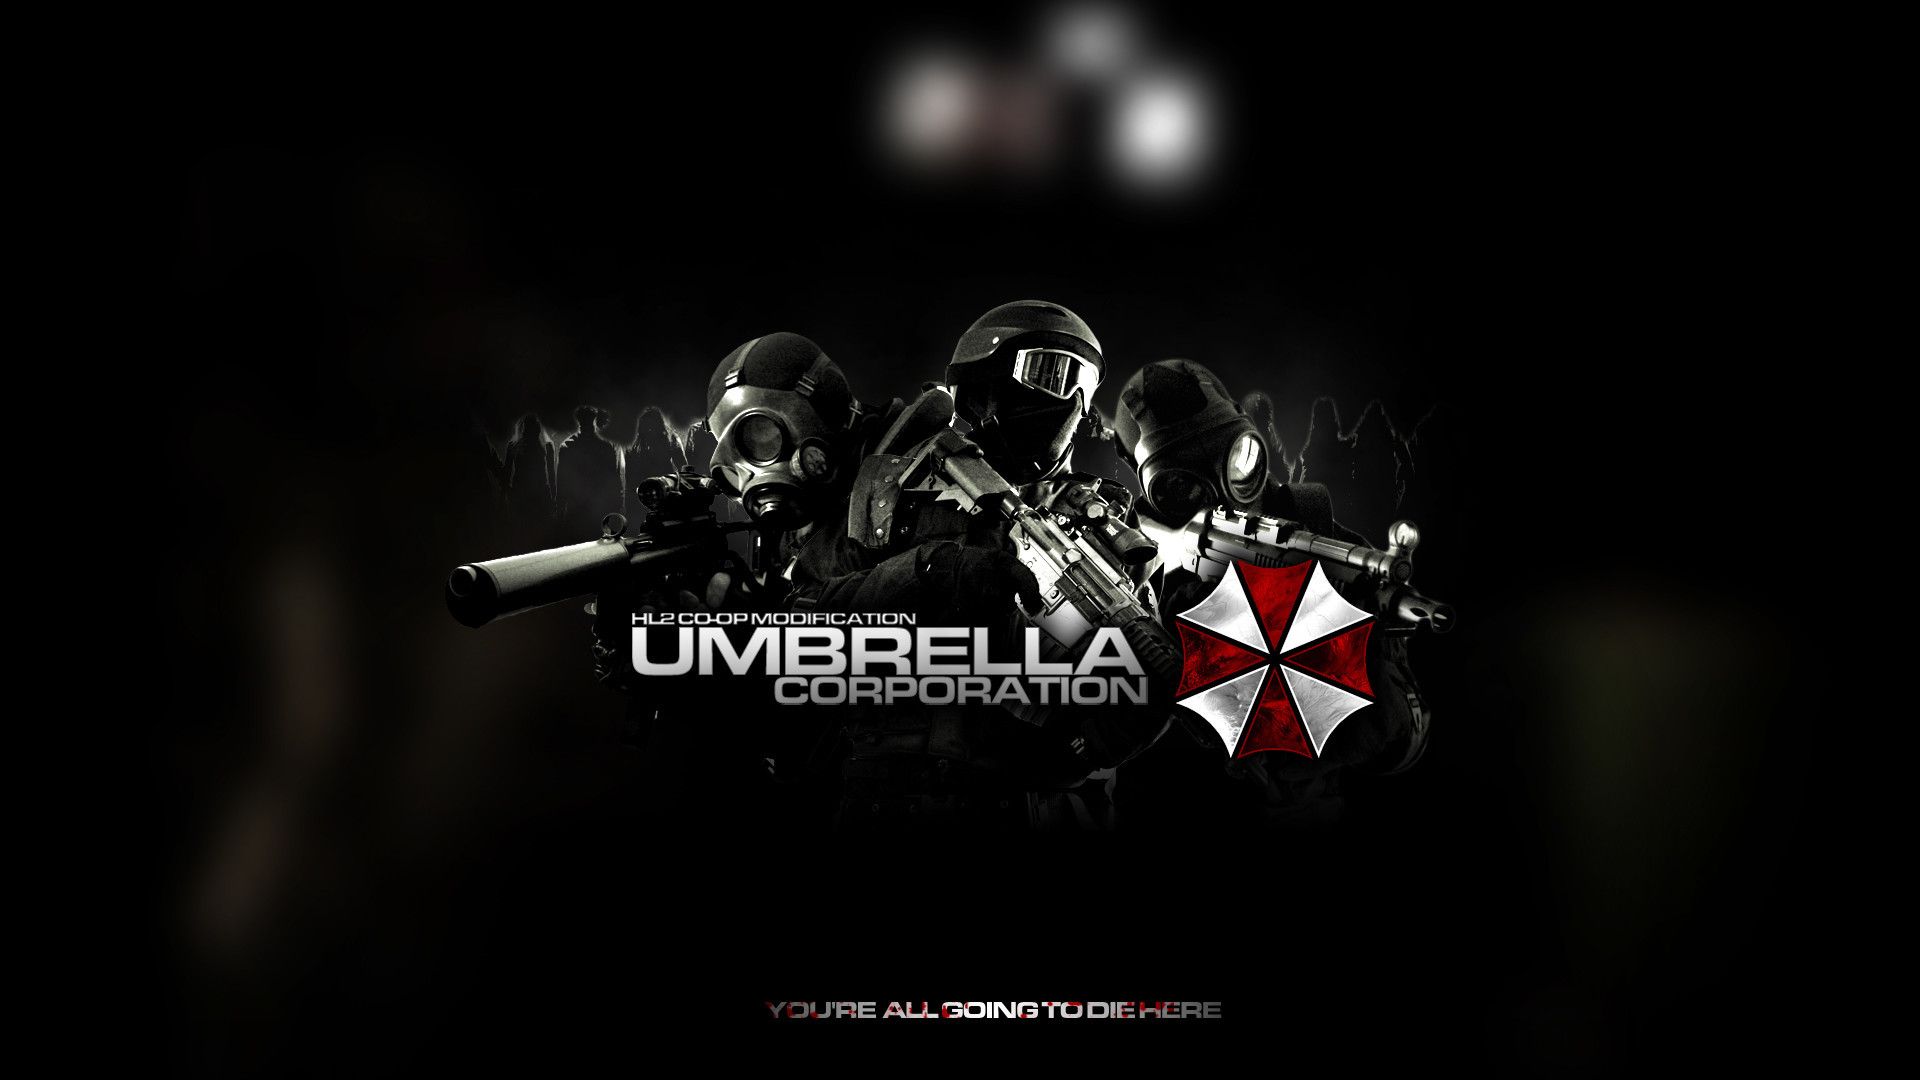 Umbrella Corporation Wallpaper background picture